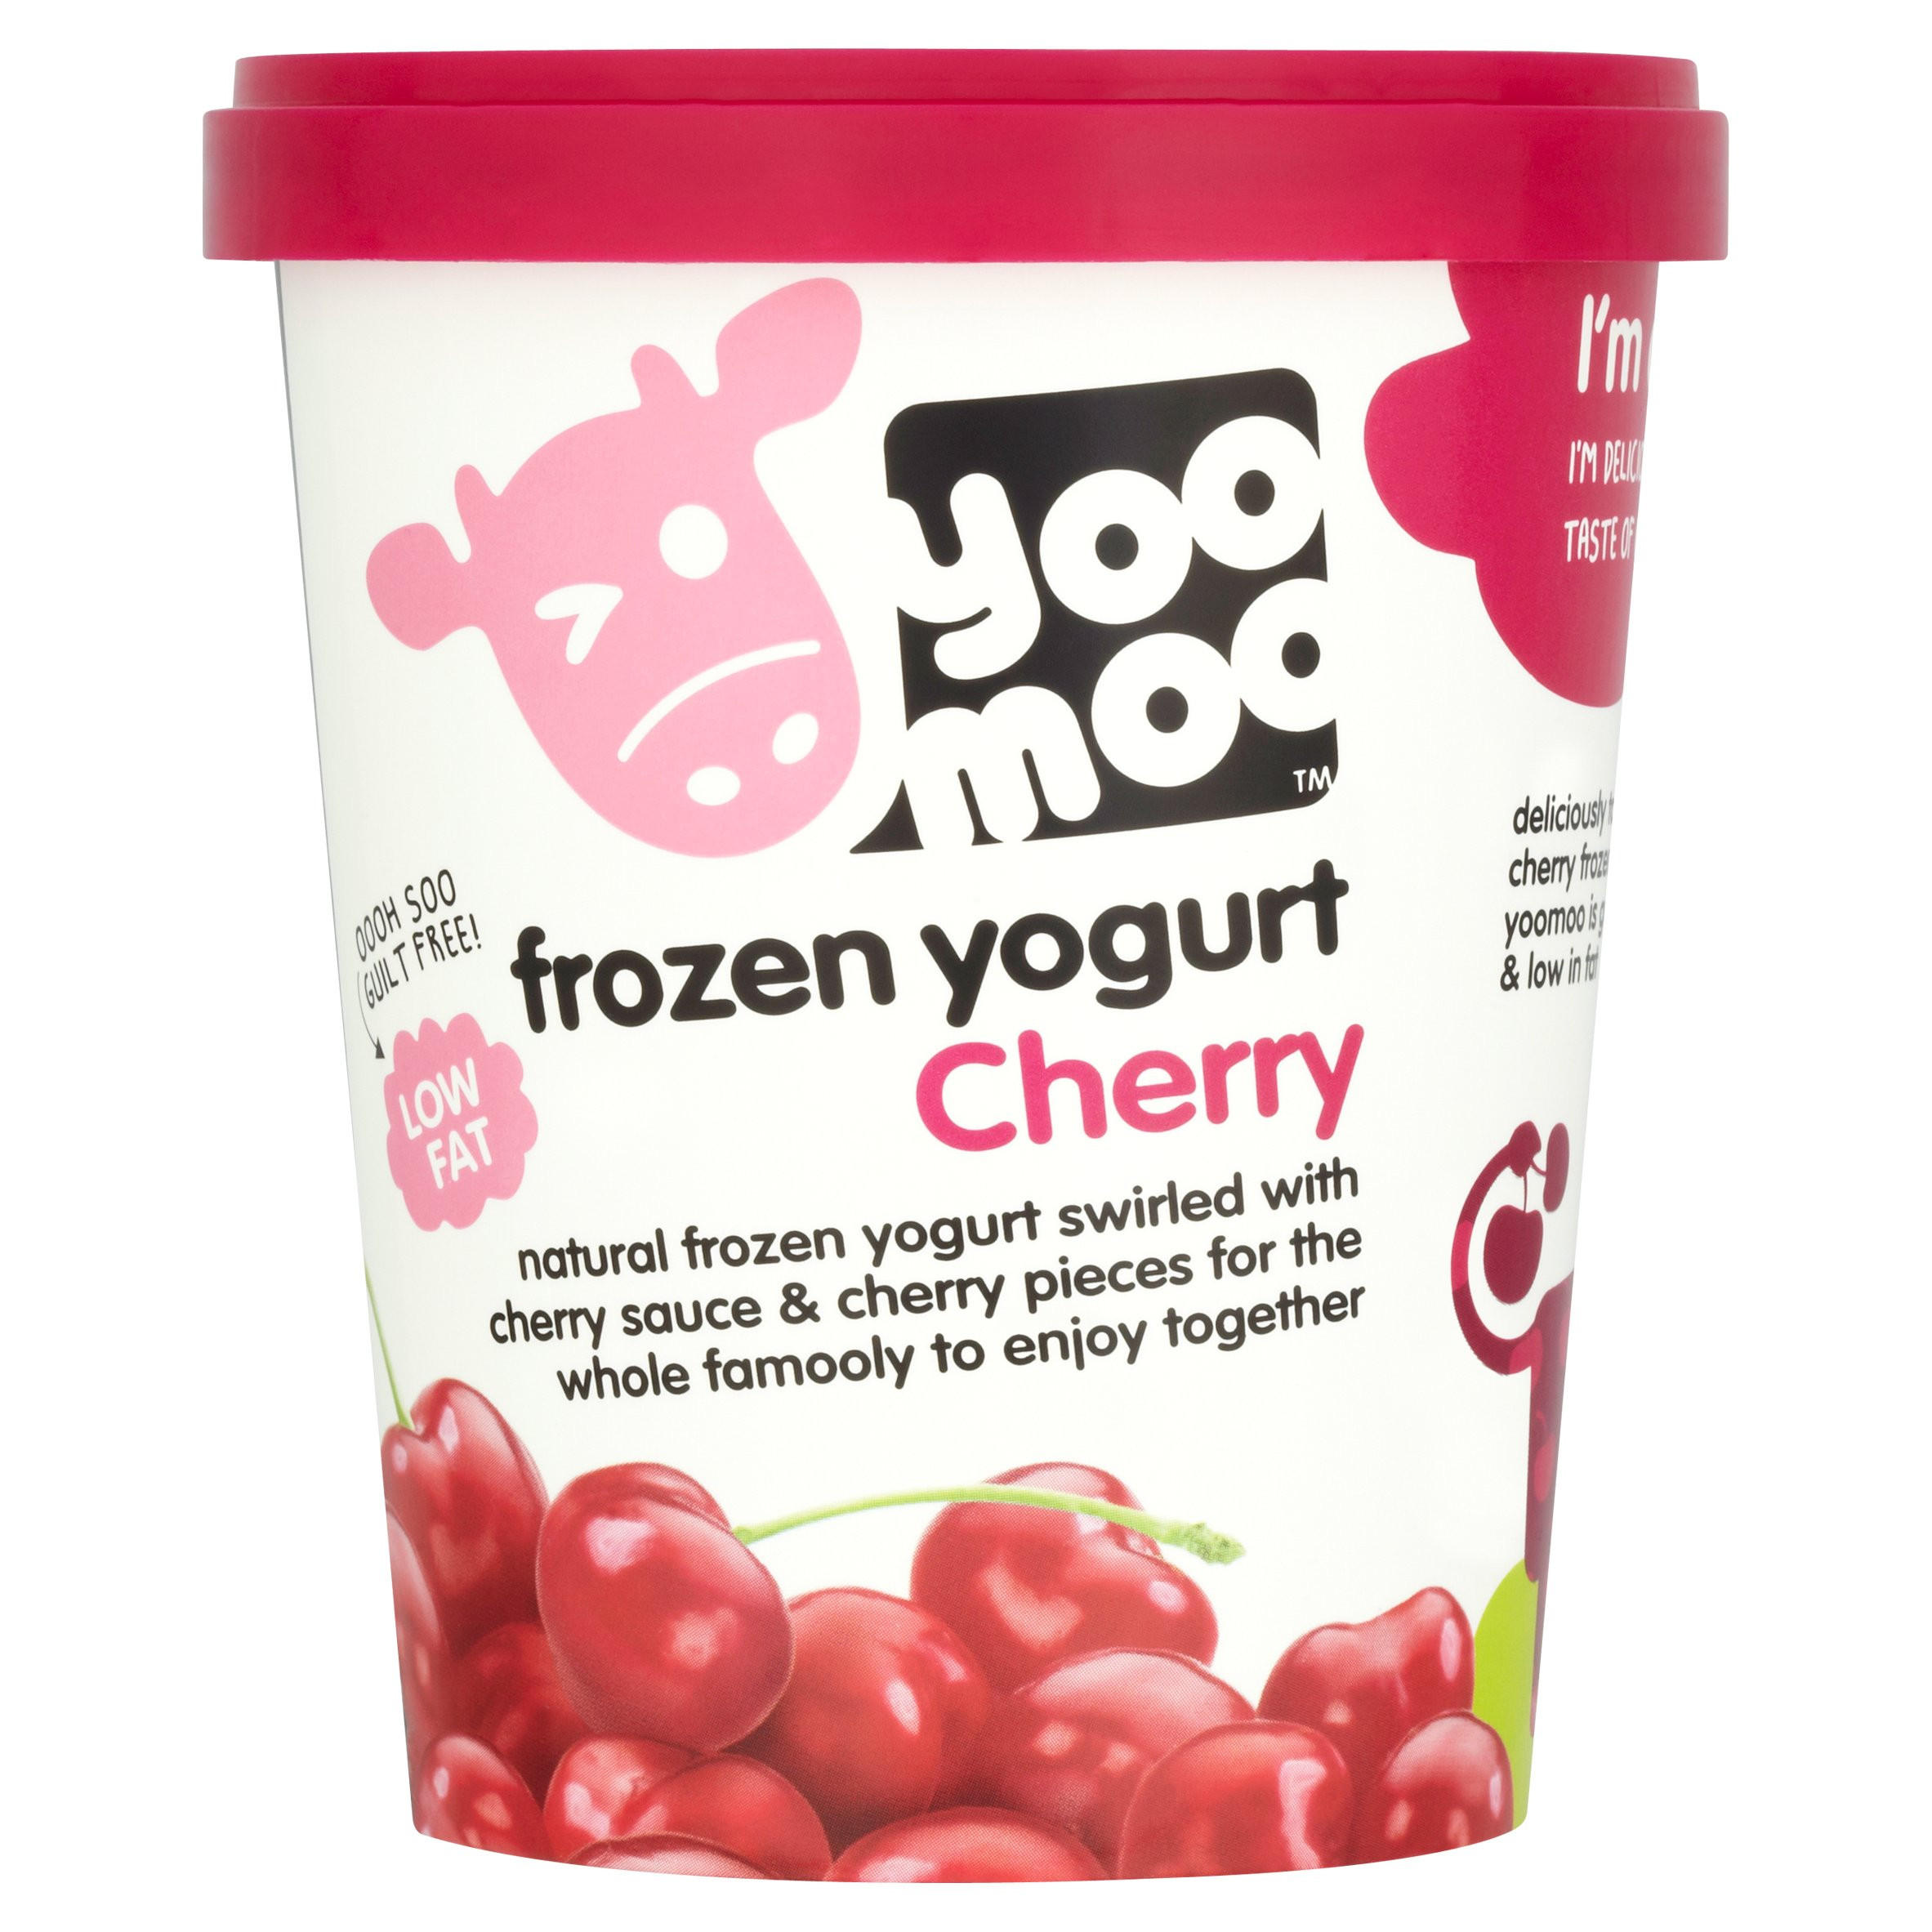 frozen yogurt delivery uk